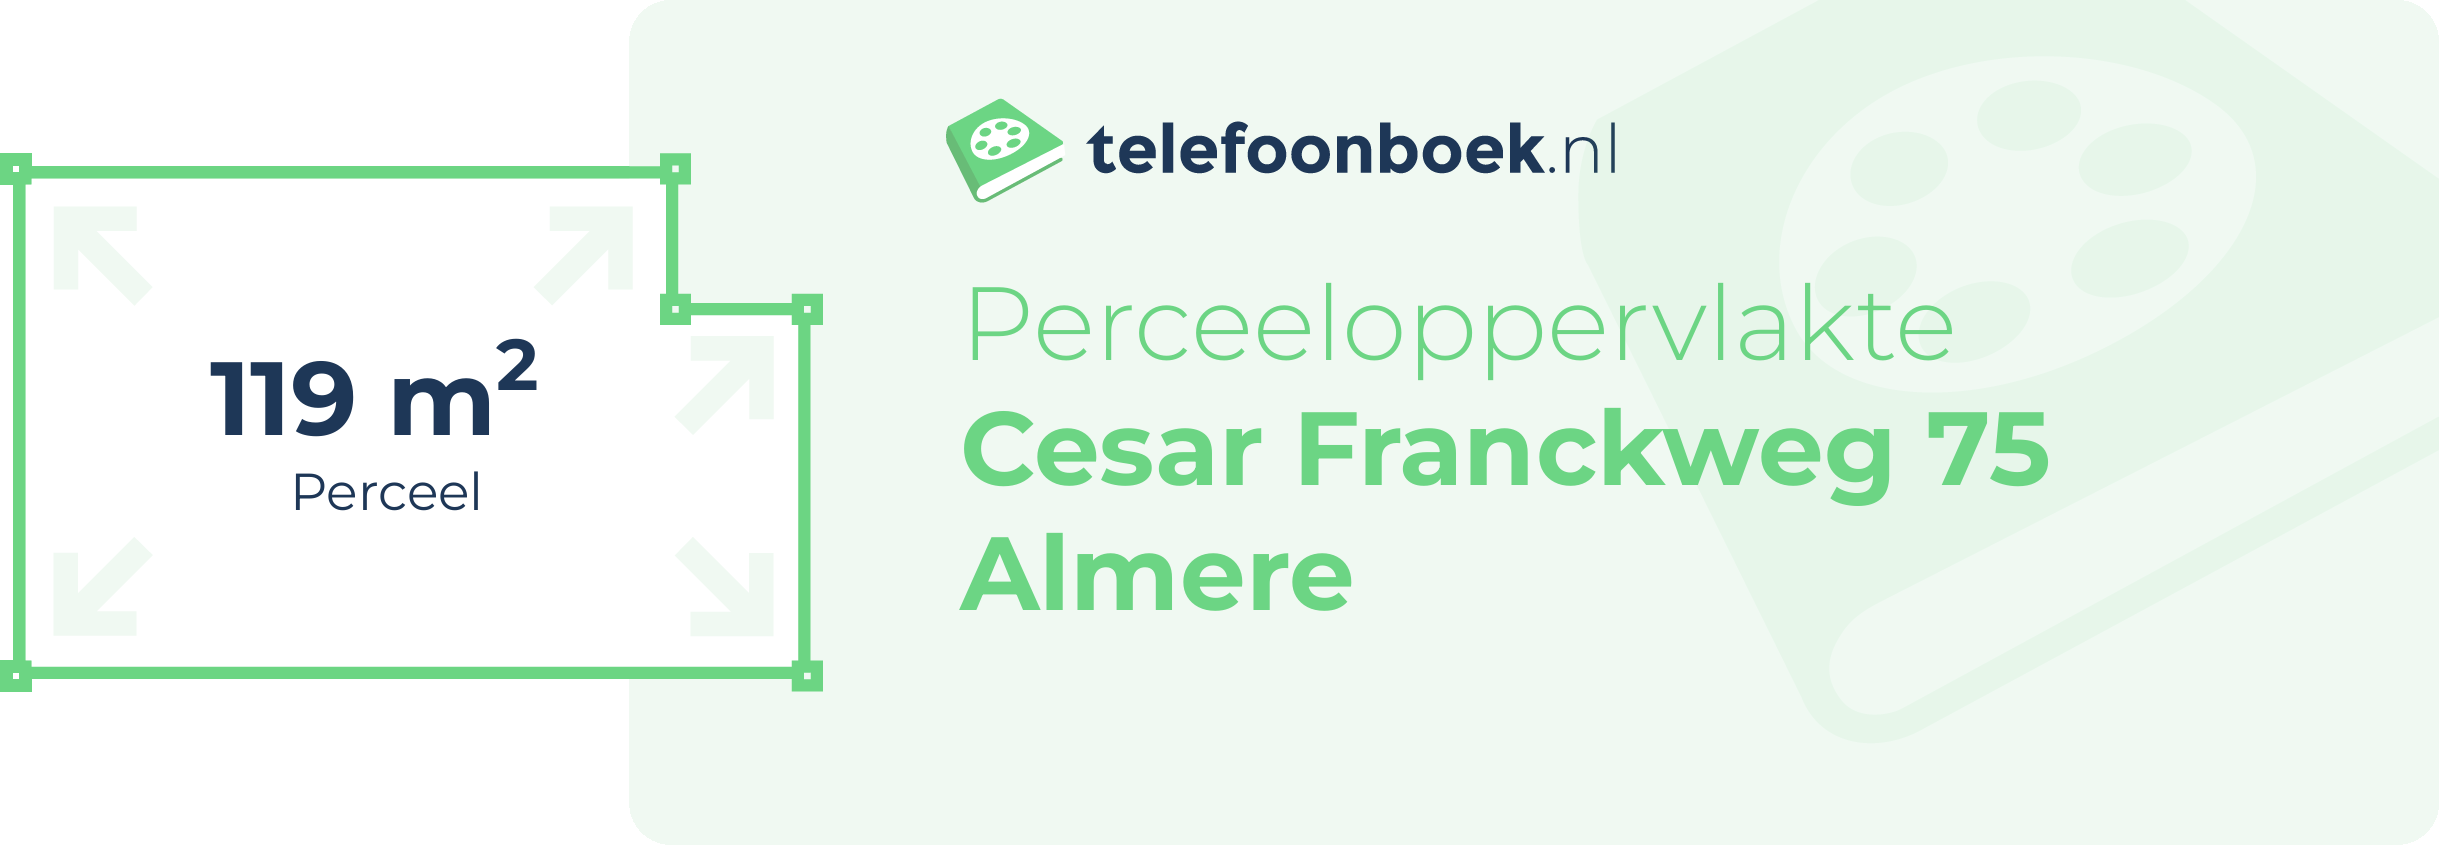 Perceeloppervlakte Cesar Franckweg 75 Almere